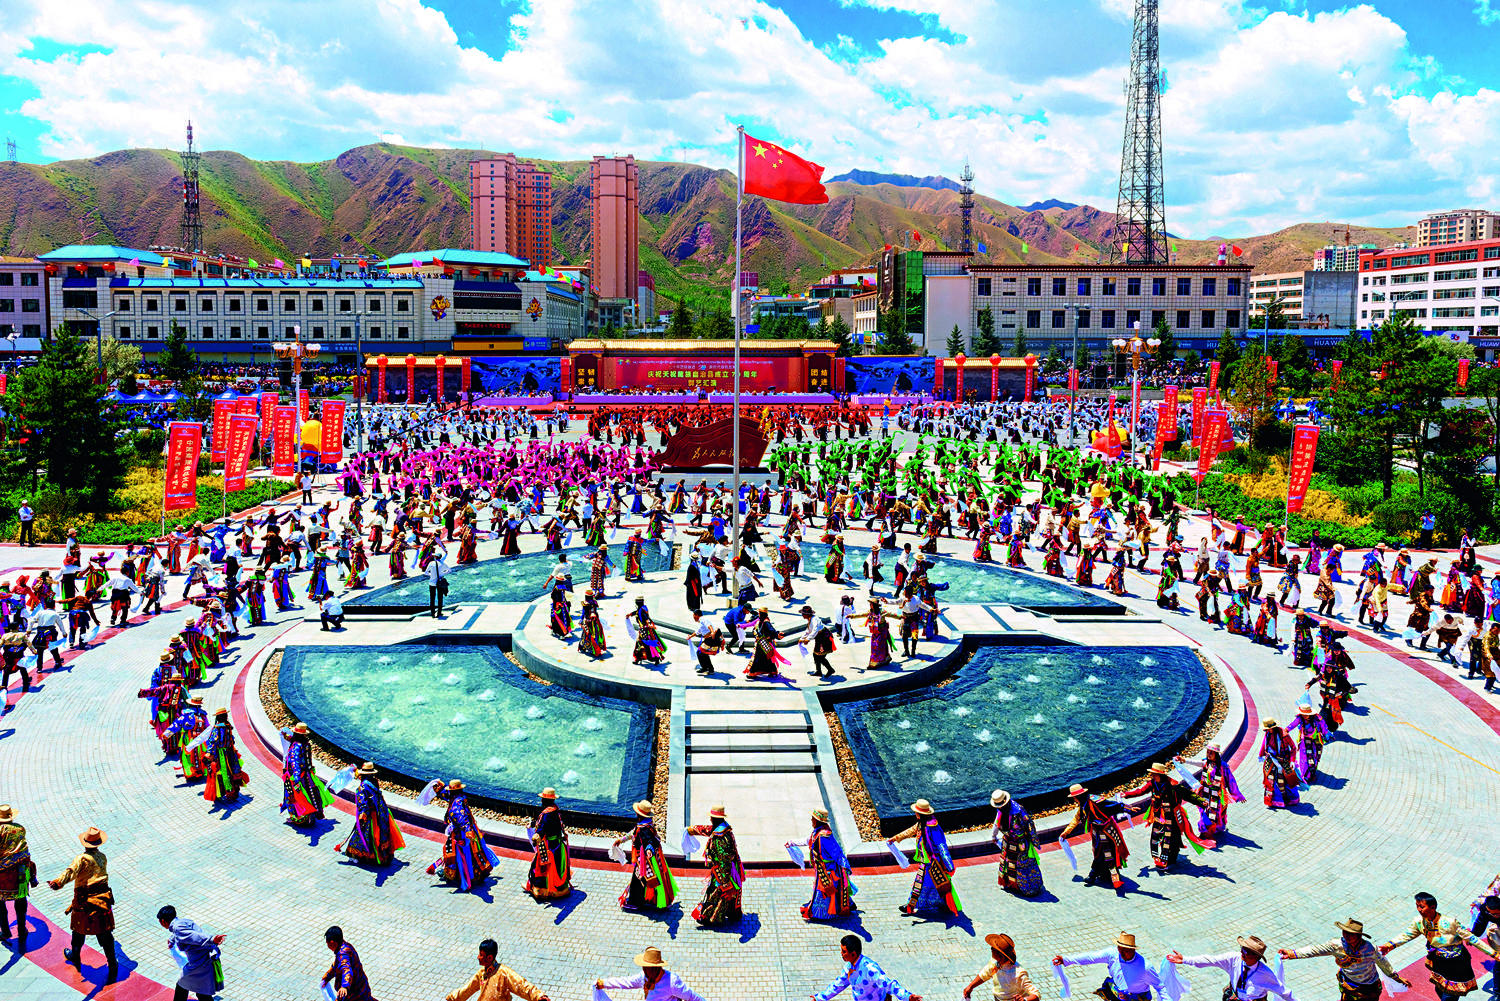 甘肃武威市天祝藏族自治县举行“欢乐藏乡·和谐天祝”万人锅庄舞表演。中共甘肃省委统战部供图